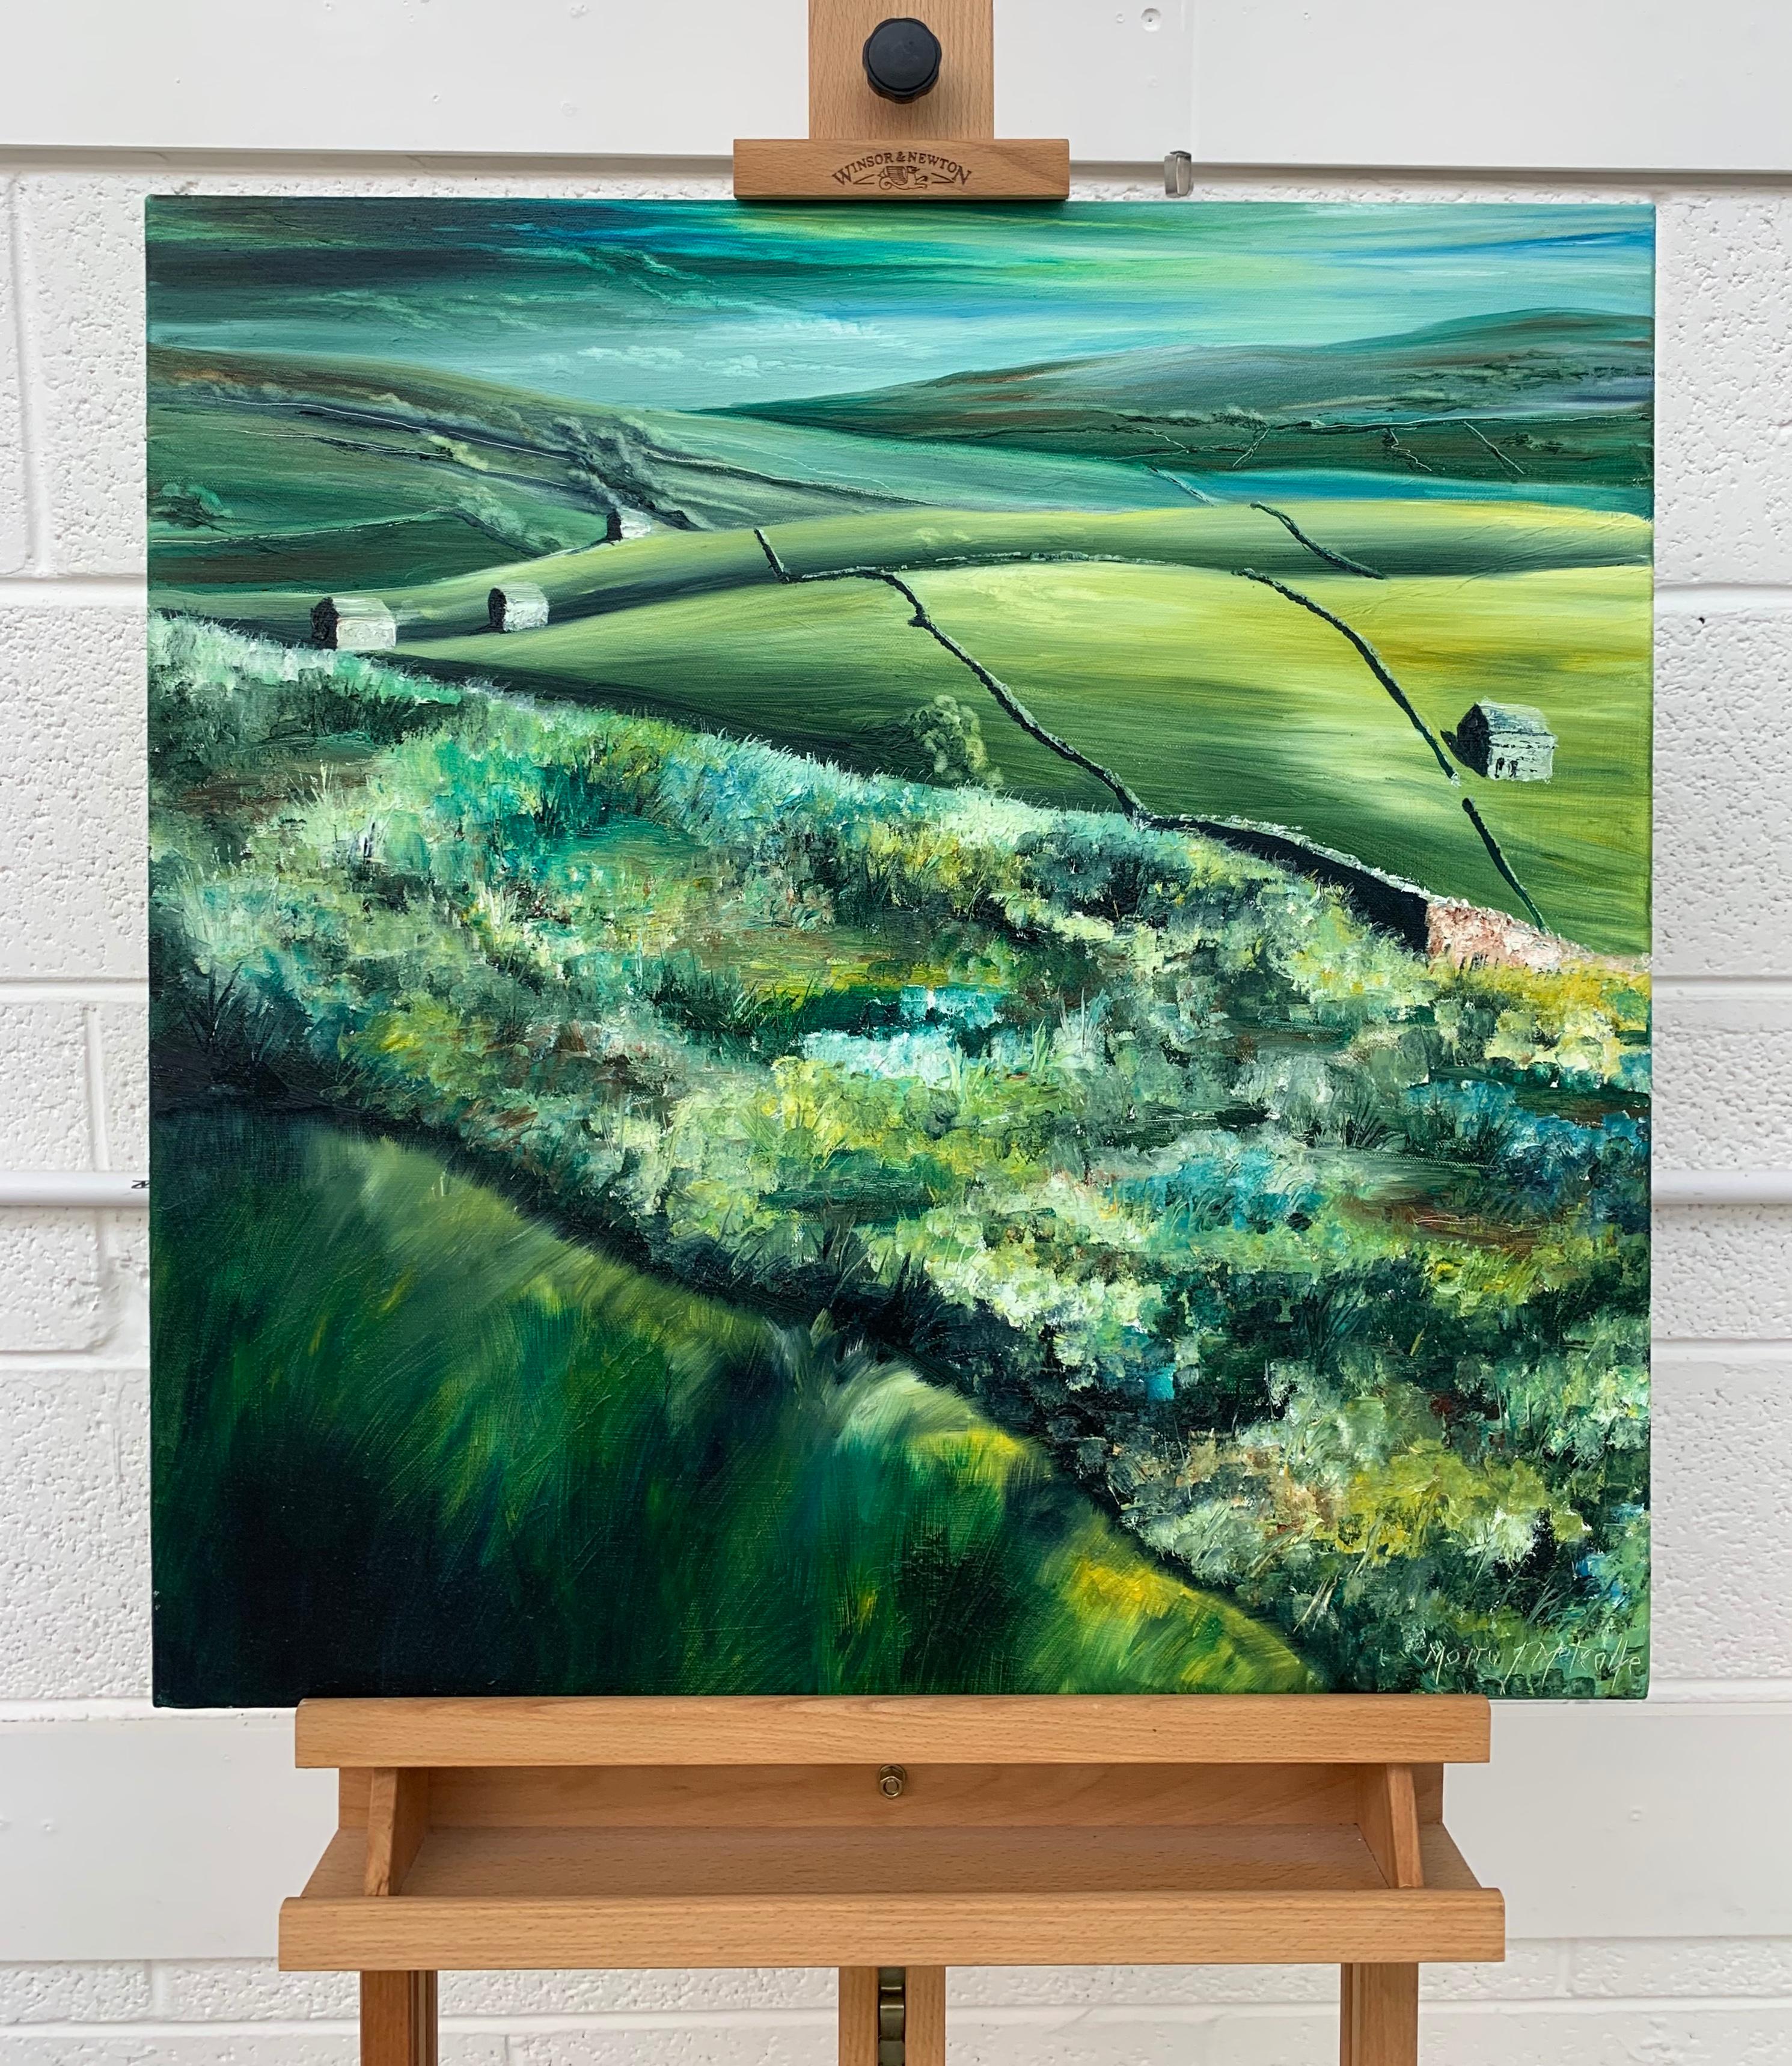 Abstrakte Landschaft Ölgemälde von grünen Feldern und Bäumen in den Yorkshire Dales, ein Gebiet von außergewöhnlicher natürlicher Schönheit, von der britischen Künstlerin Moira Metcalfe. Dieses Original zeigt den geschickten Einsatz von